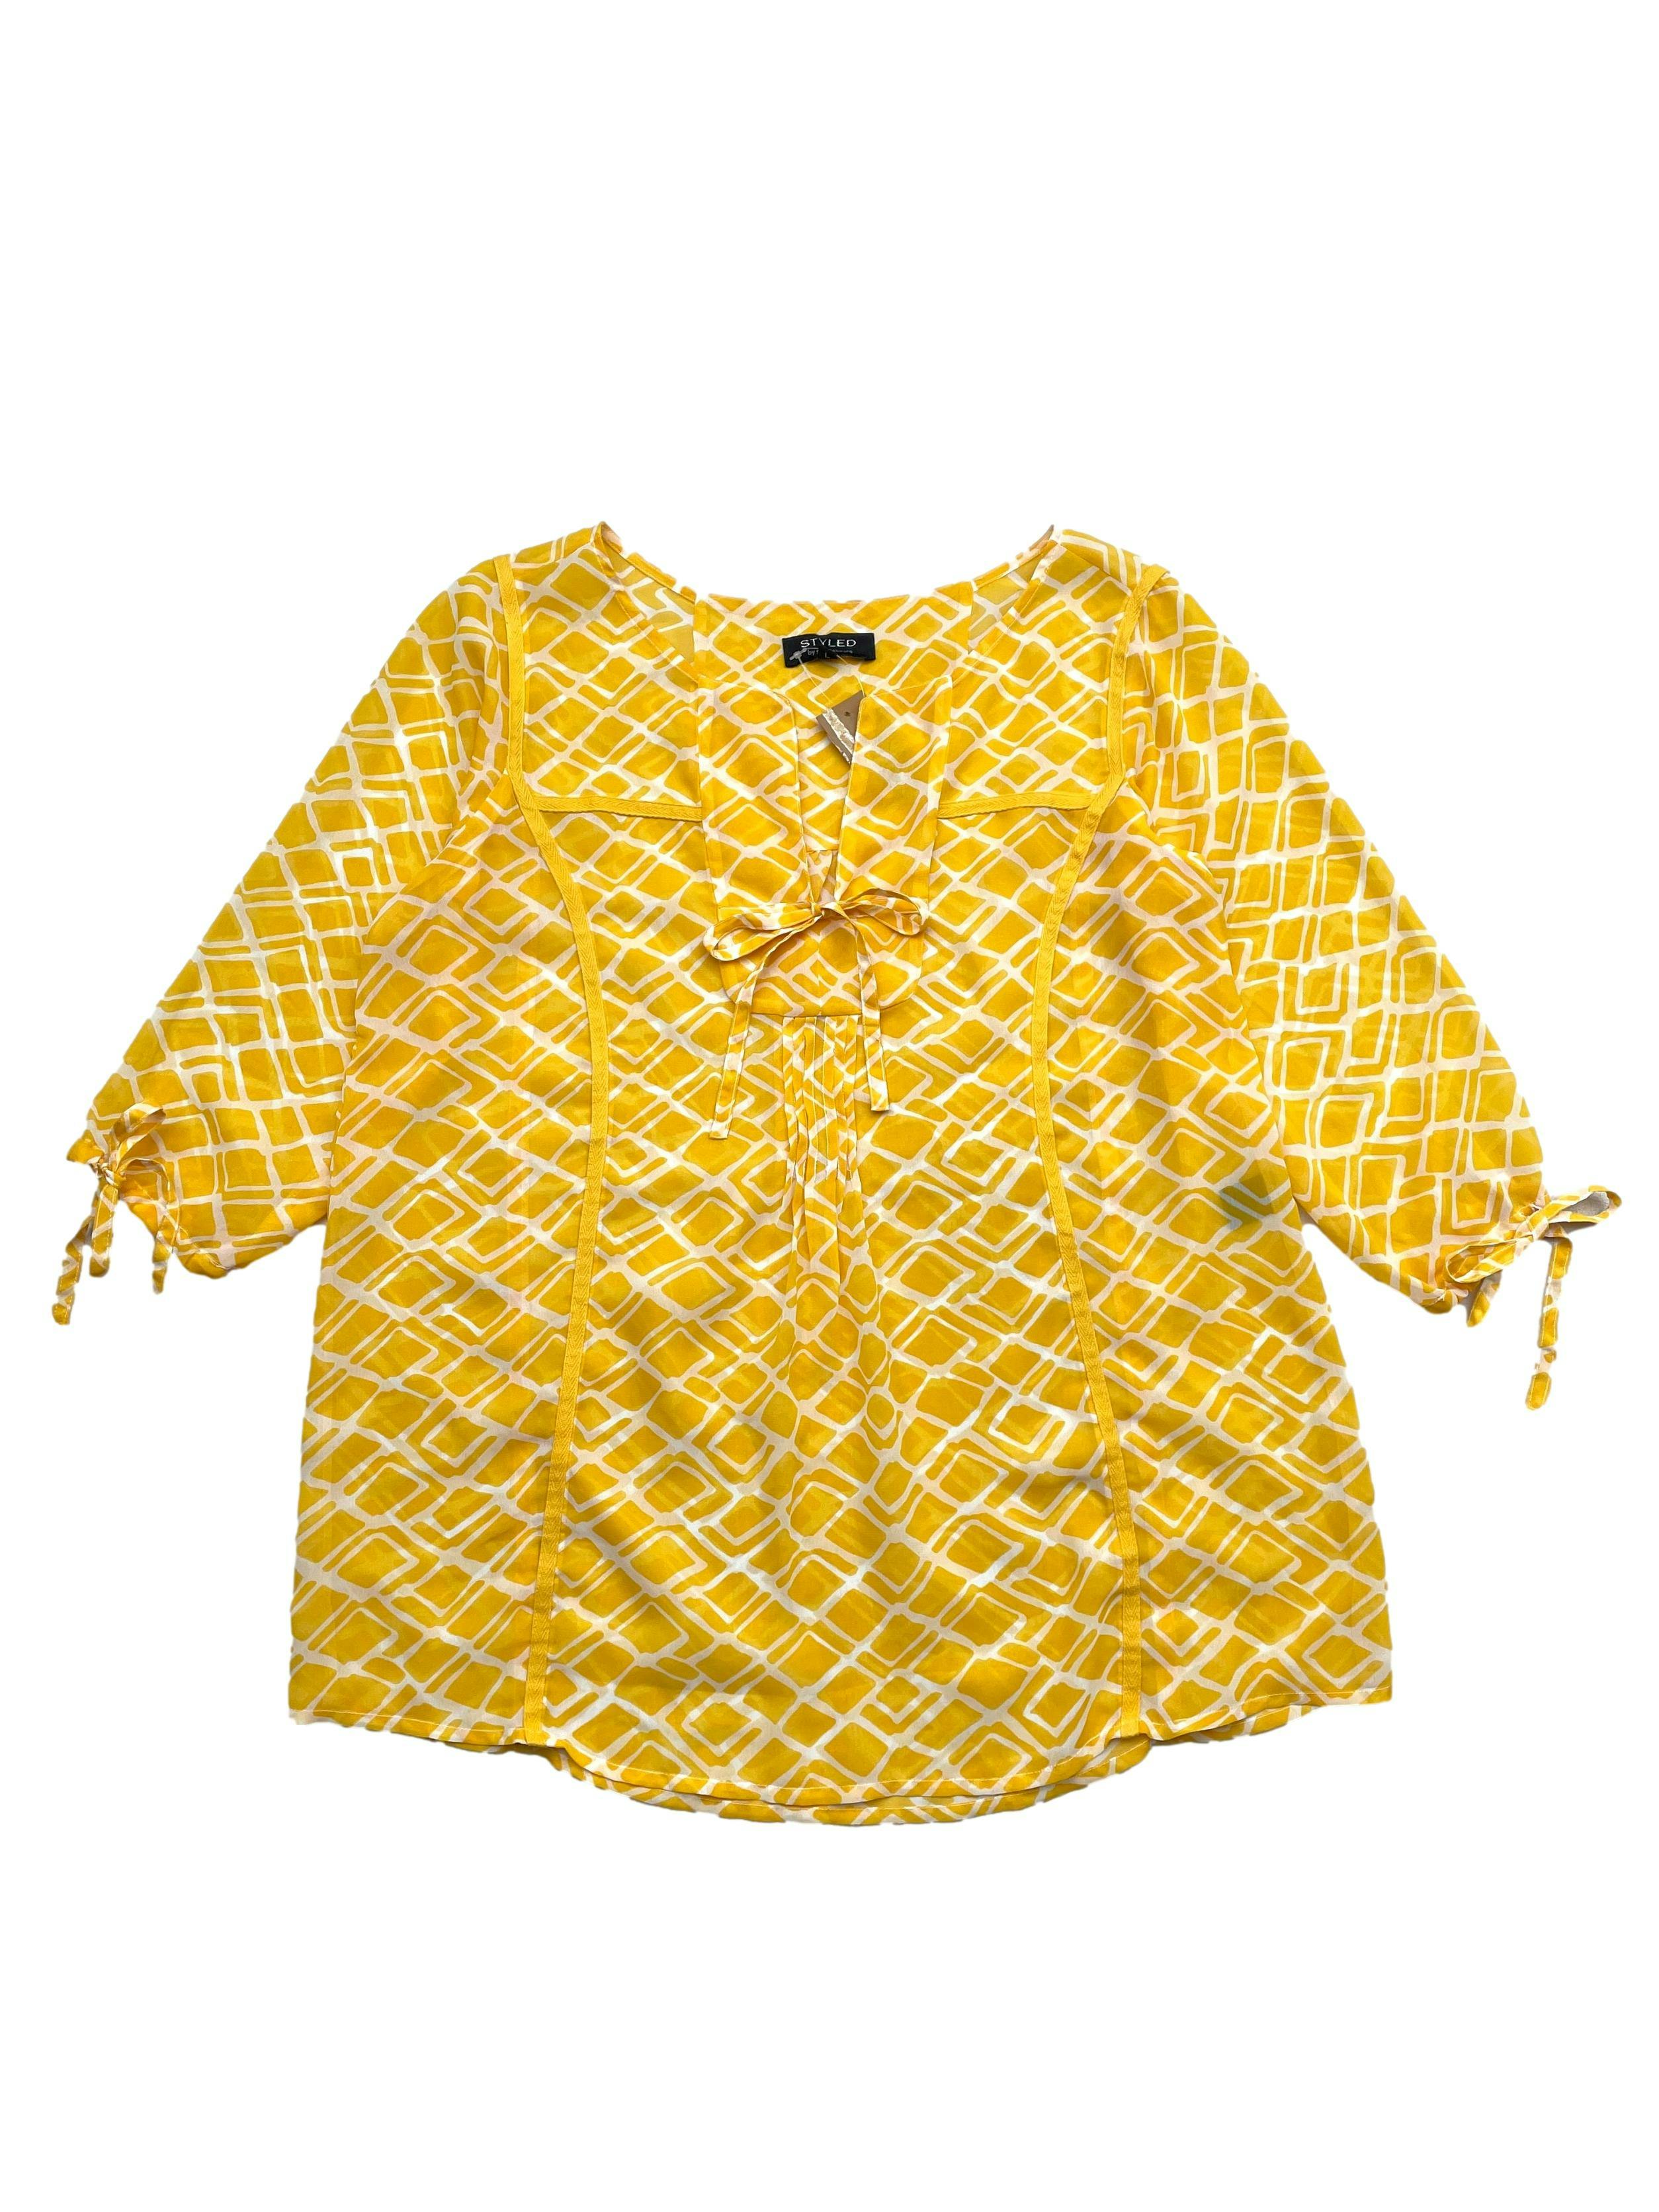 Blusa Styled by Sam Saboura, gasa de color amarillo y blanco con cintas en escote y mangas. Busto 110cm, Largo 70cm.